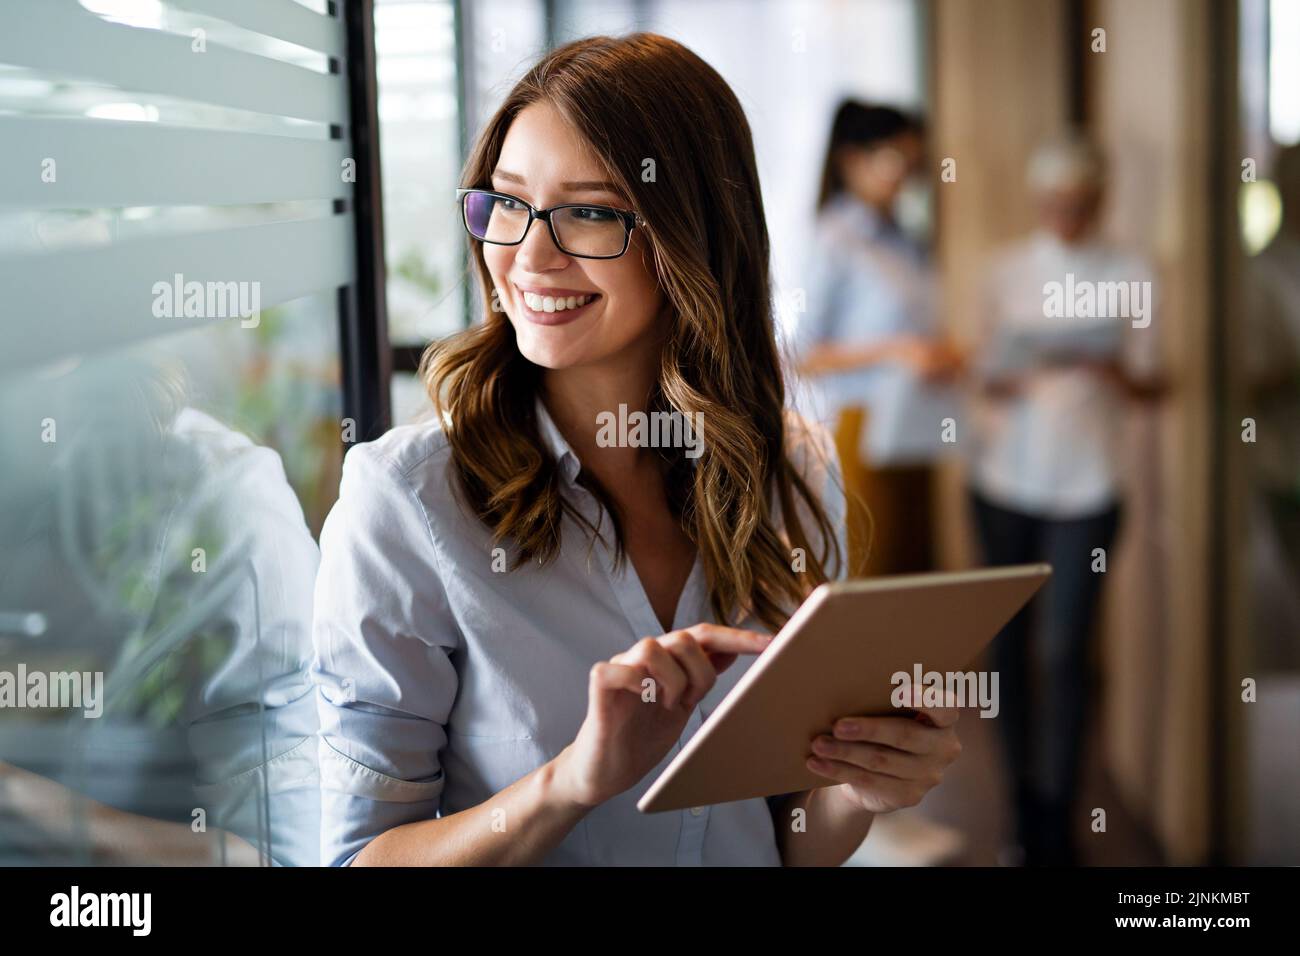 Jeune femme d'affaires heureuse travaillant avec une tablette dans un bureau d'entreprise Banque D'Images